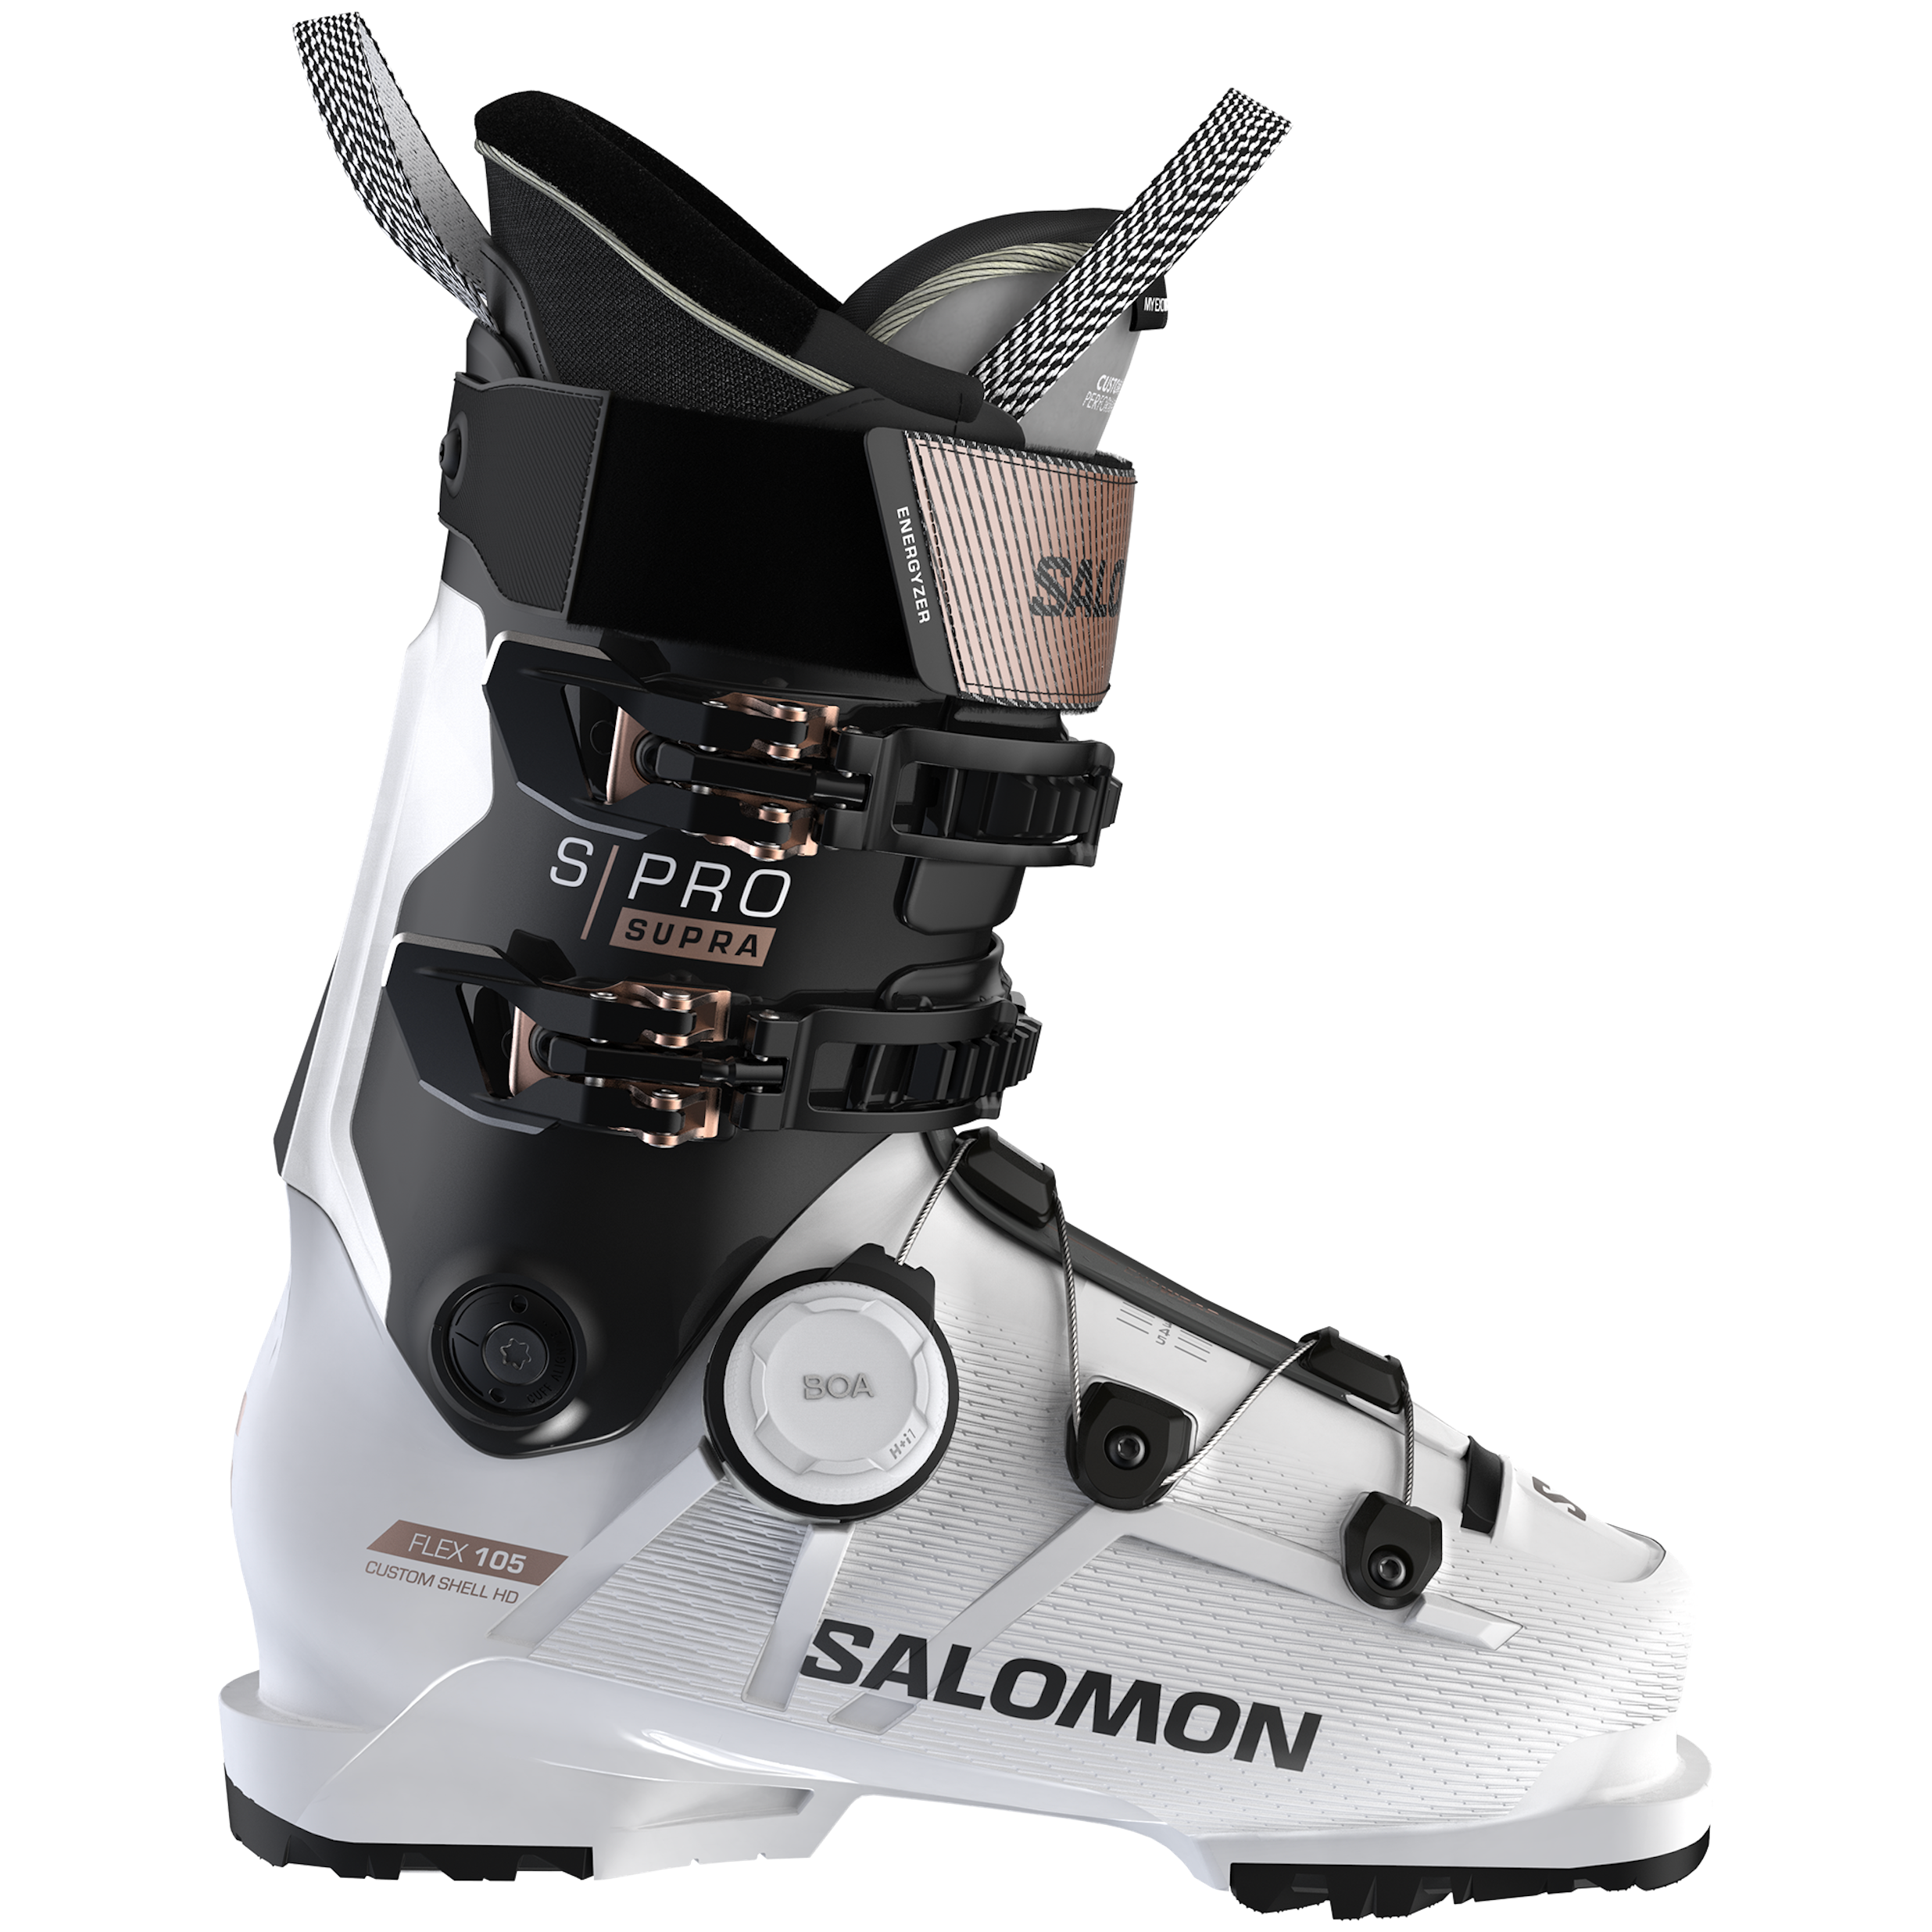 Women's Salomon S/PRO Supra BOA 105 White ski boot with black and rose gold accents. BOA closure system on bottom cuff.